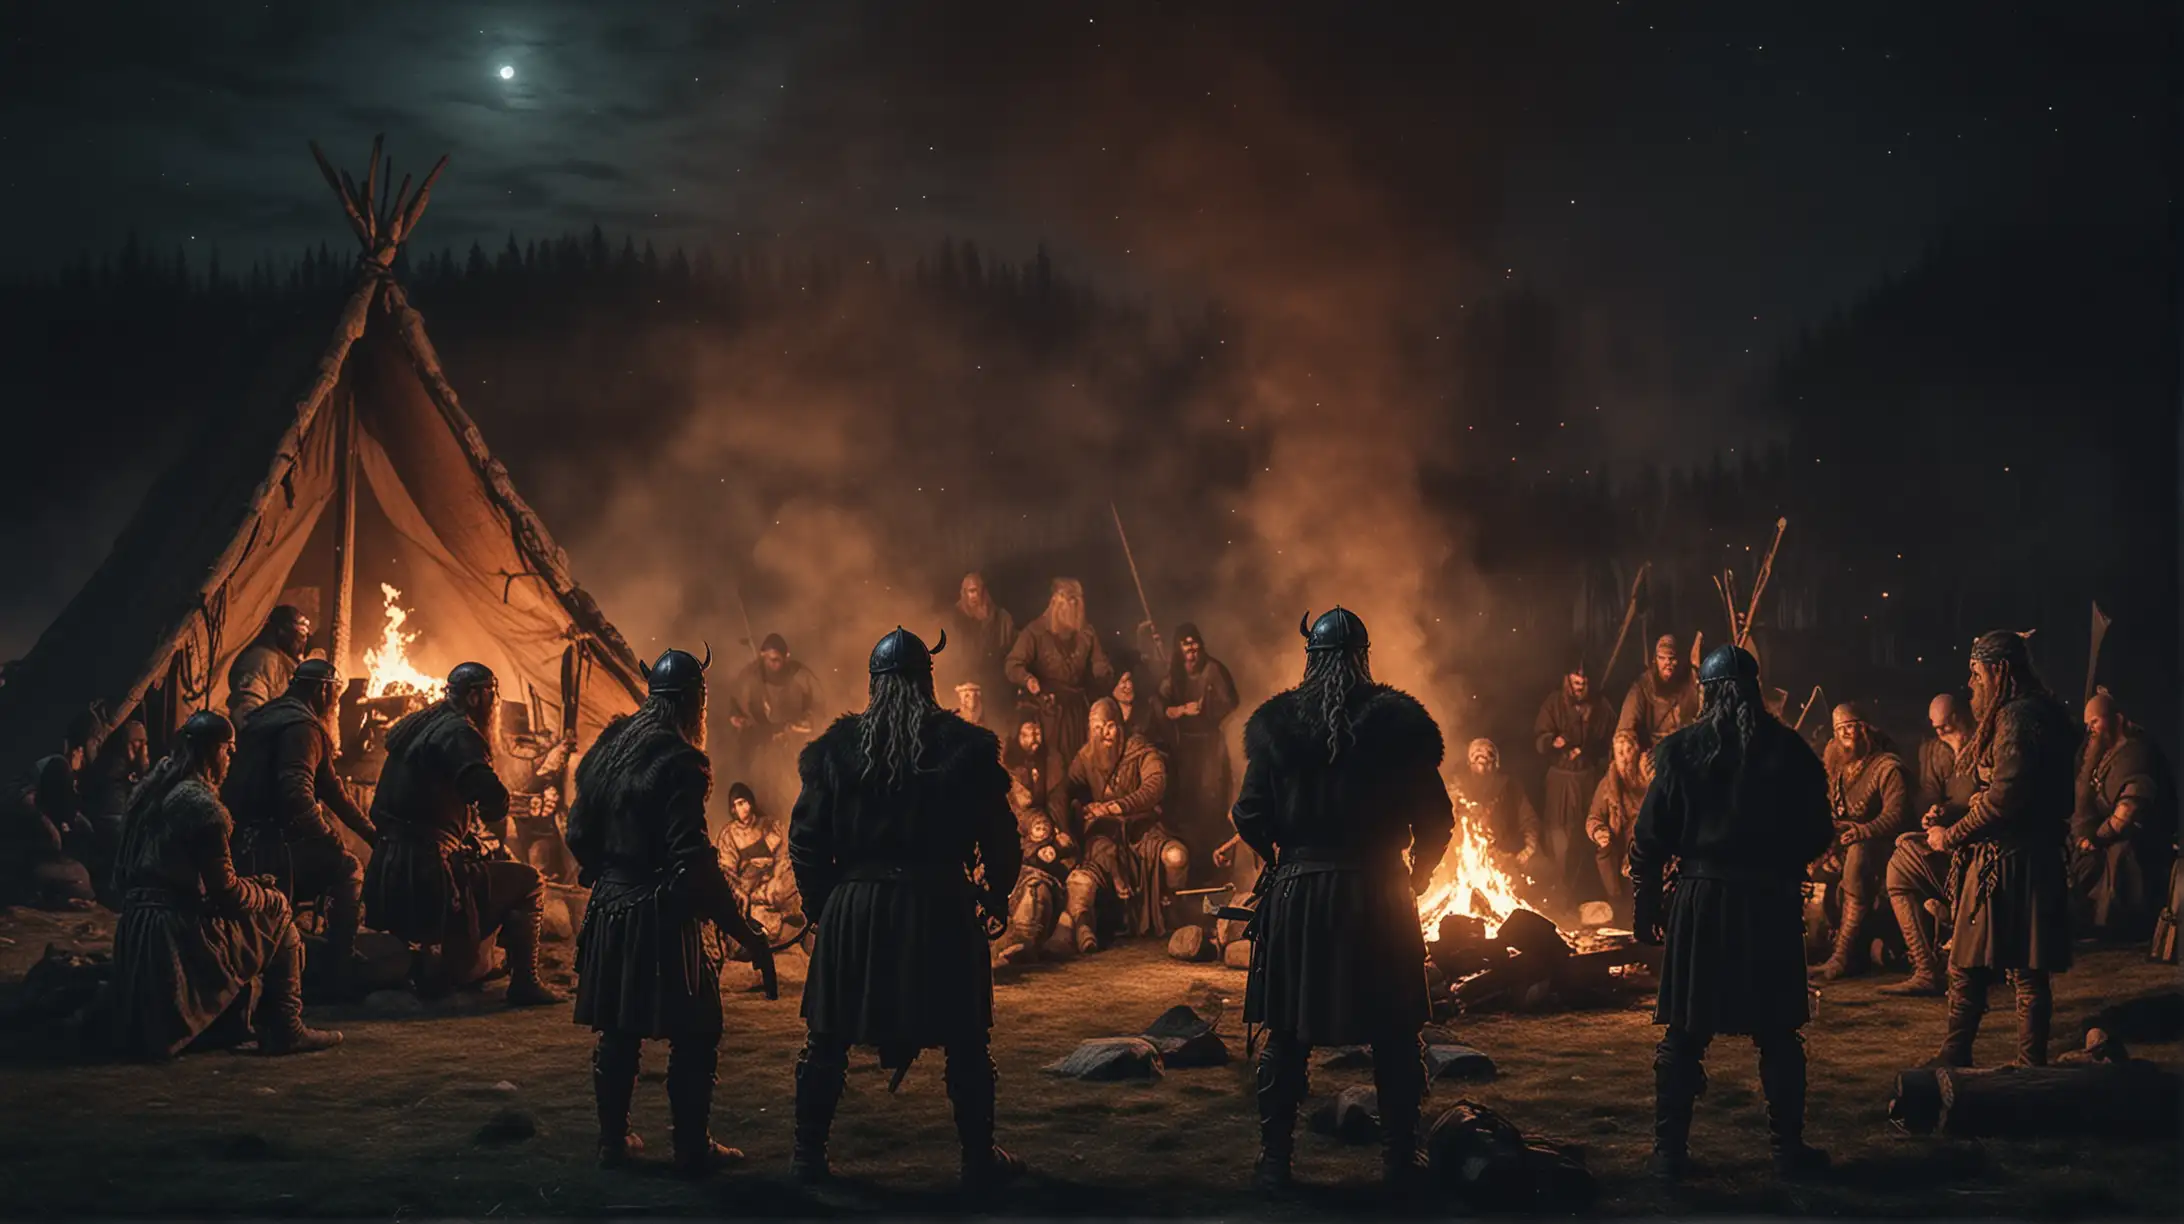 Viking Warriors Nighttime Gathering around Fire